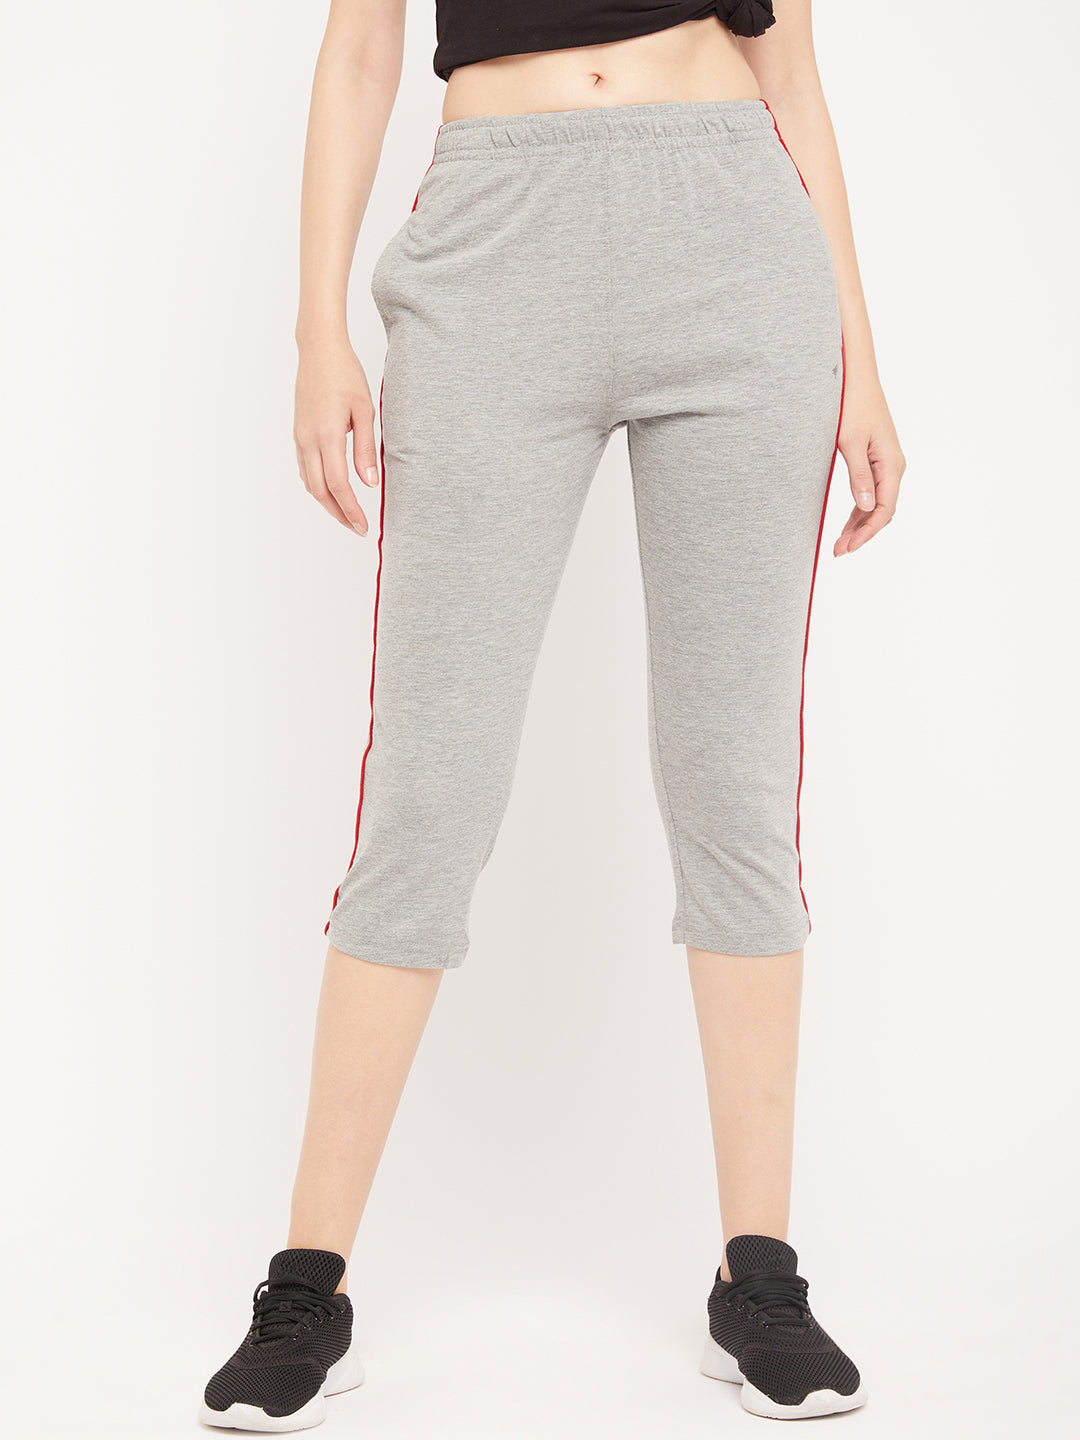 Neva Women's Capri in Solid Pattern Side pockets - Milange Grey